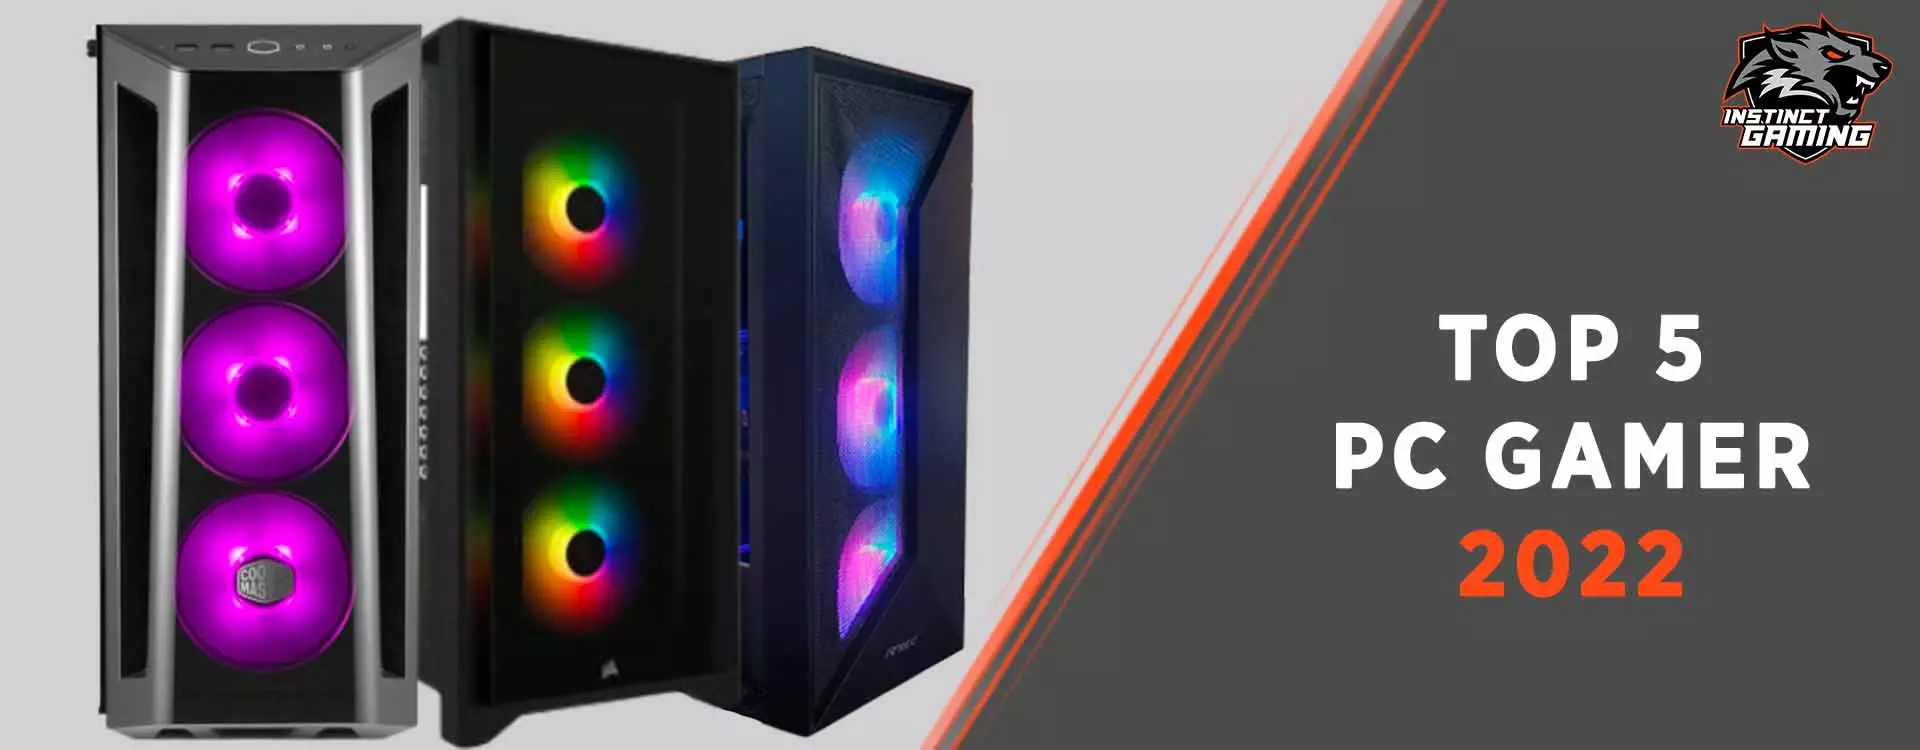 Boitiers PC RGB - Comparatif et sélection des meilleurs